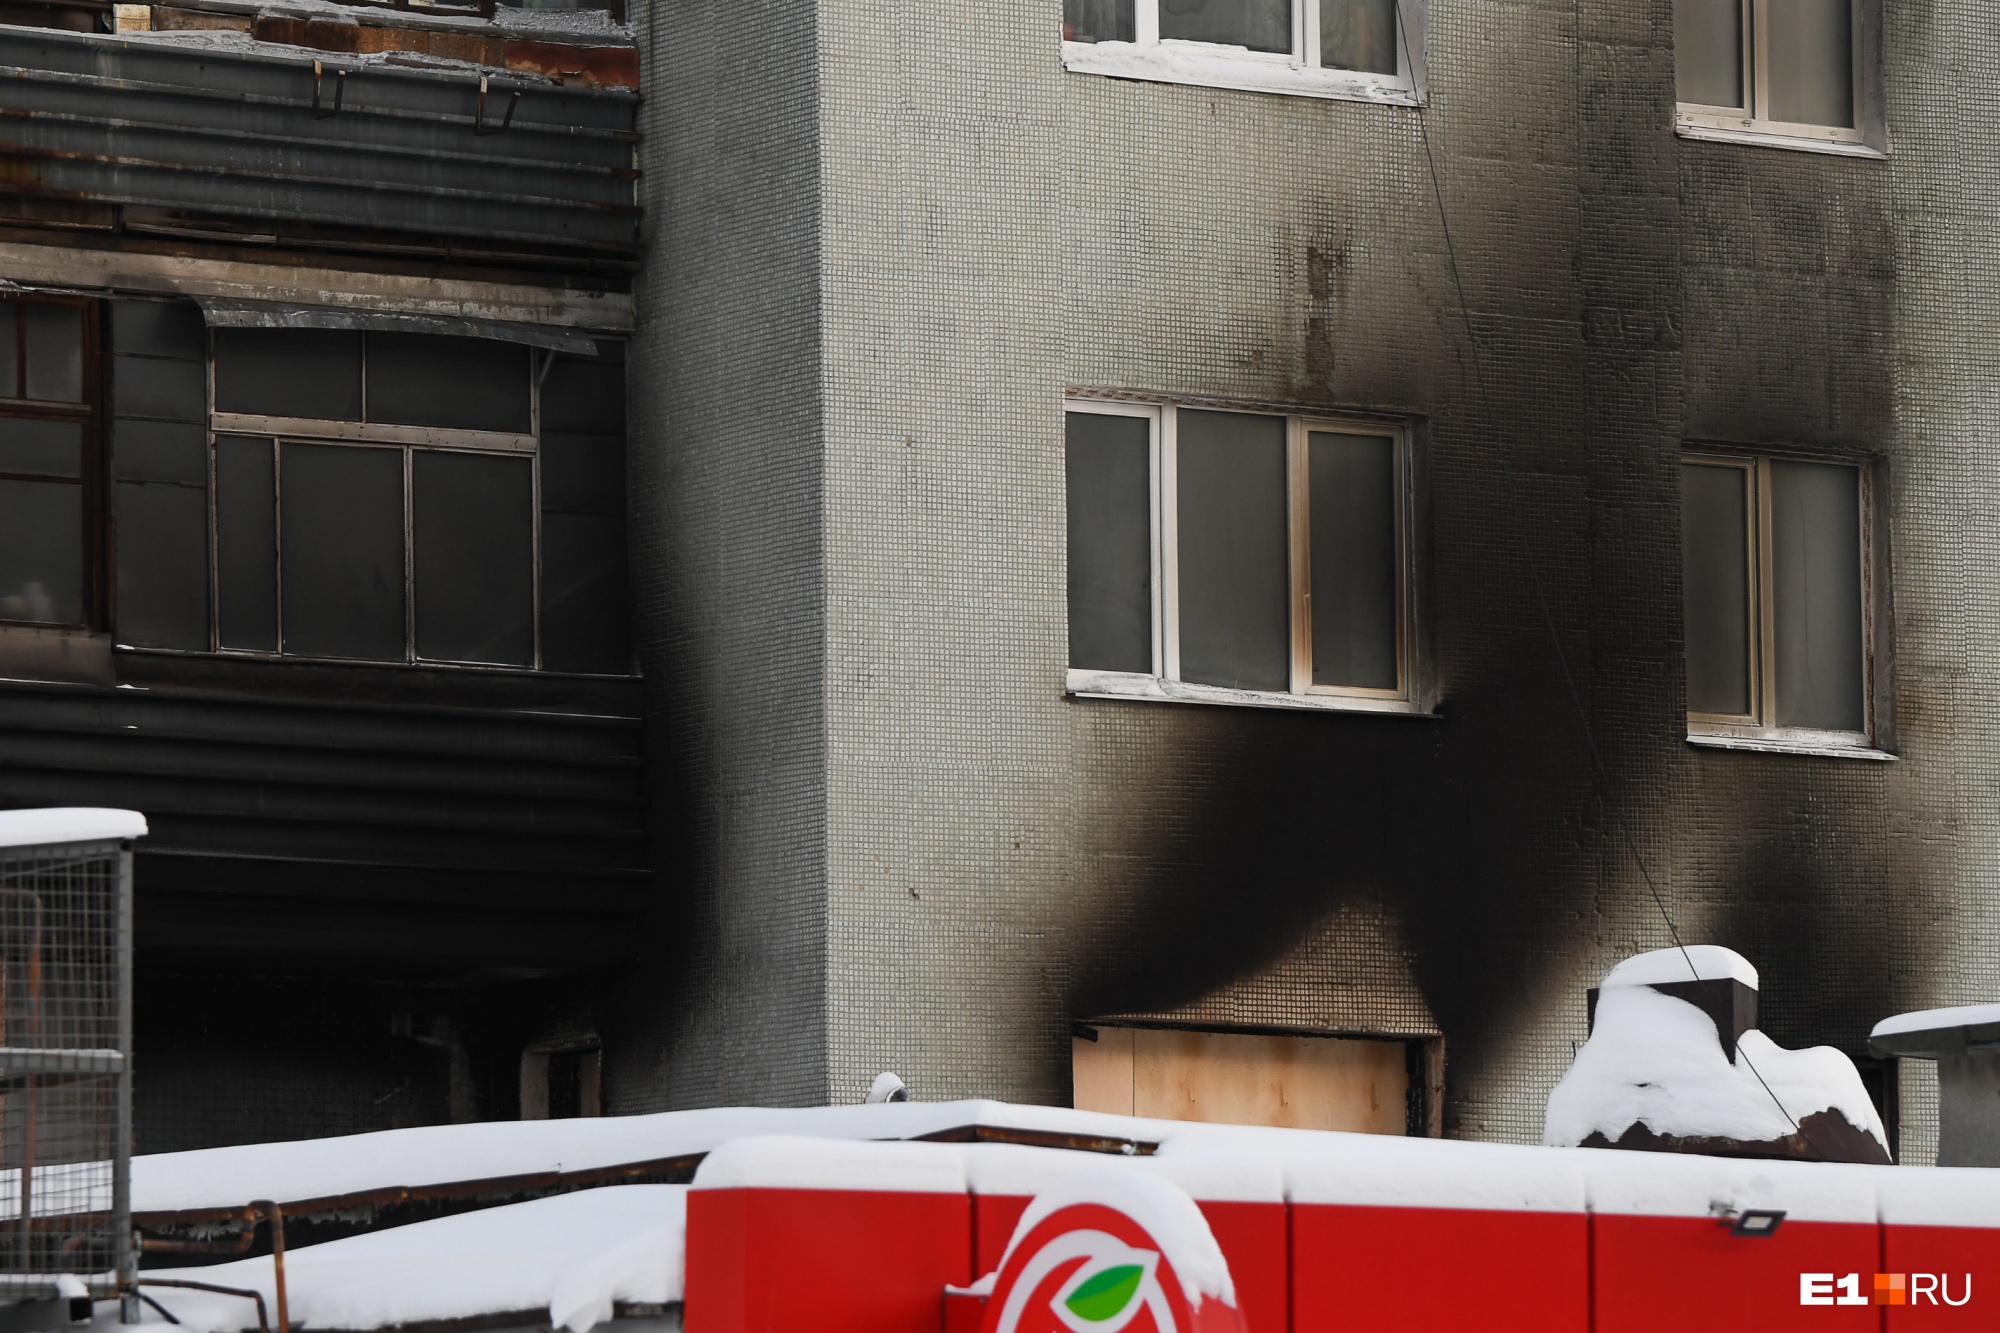 Управляющая компания ответит за пожар на Рассветной, где погибли восемь человек